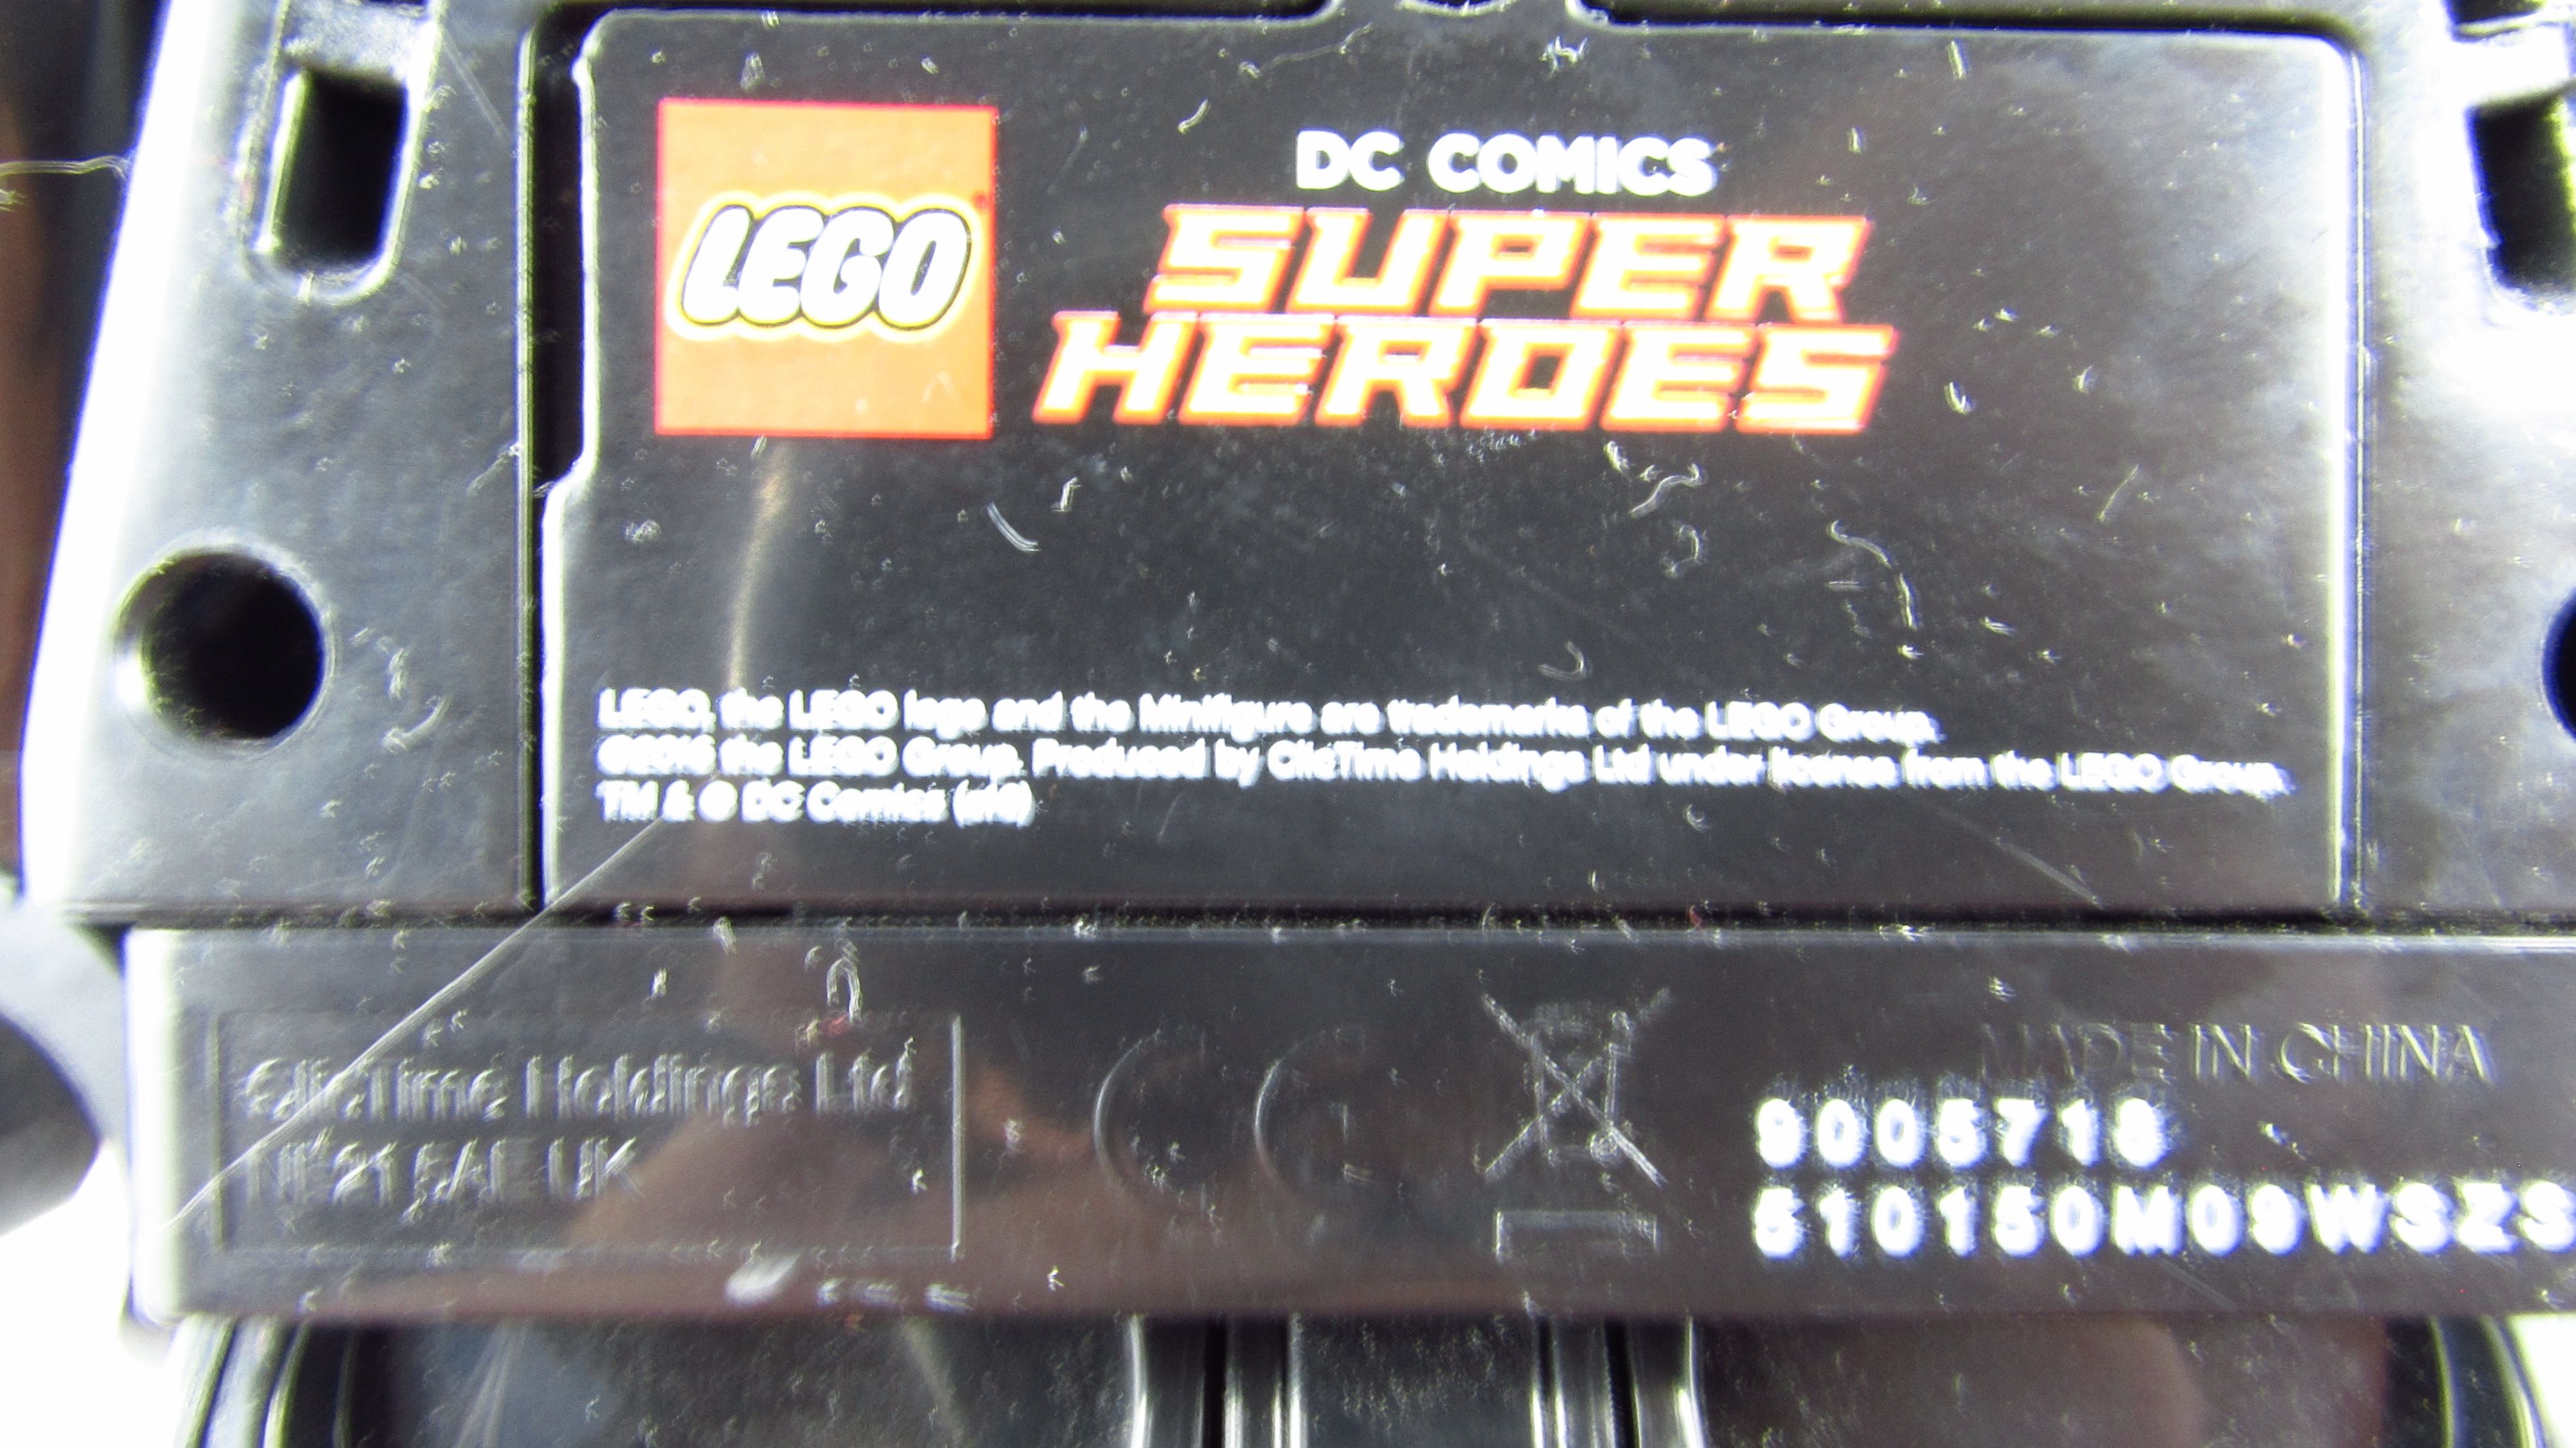 LEGO - Batman DC Super Heroes - Zegar Budzik Alarm 1.